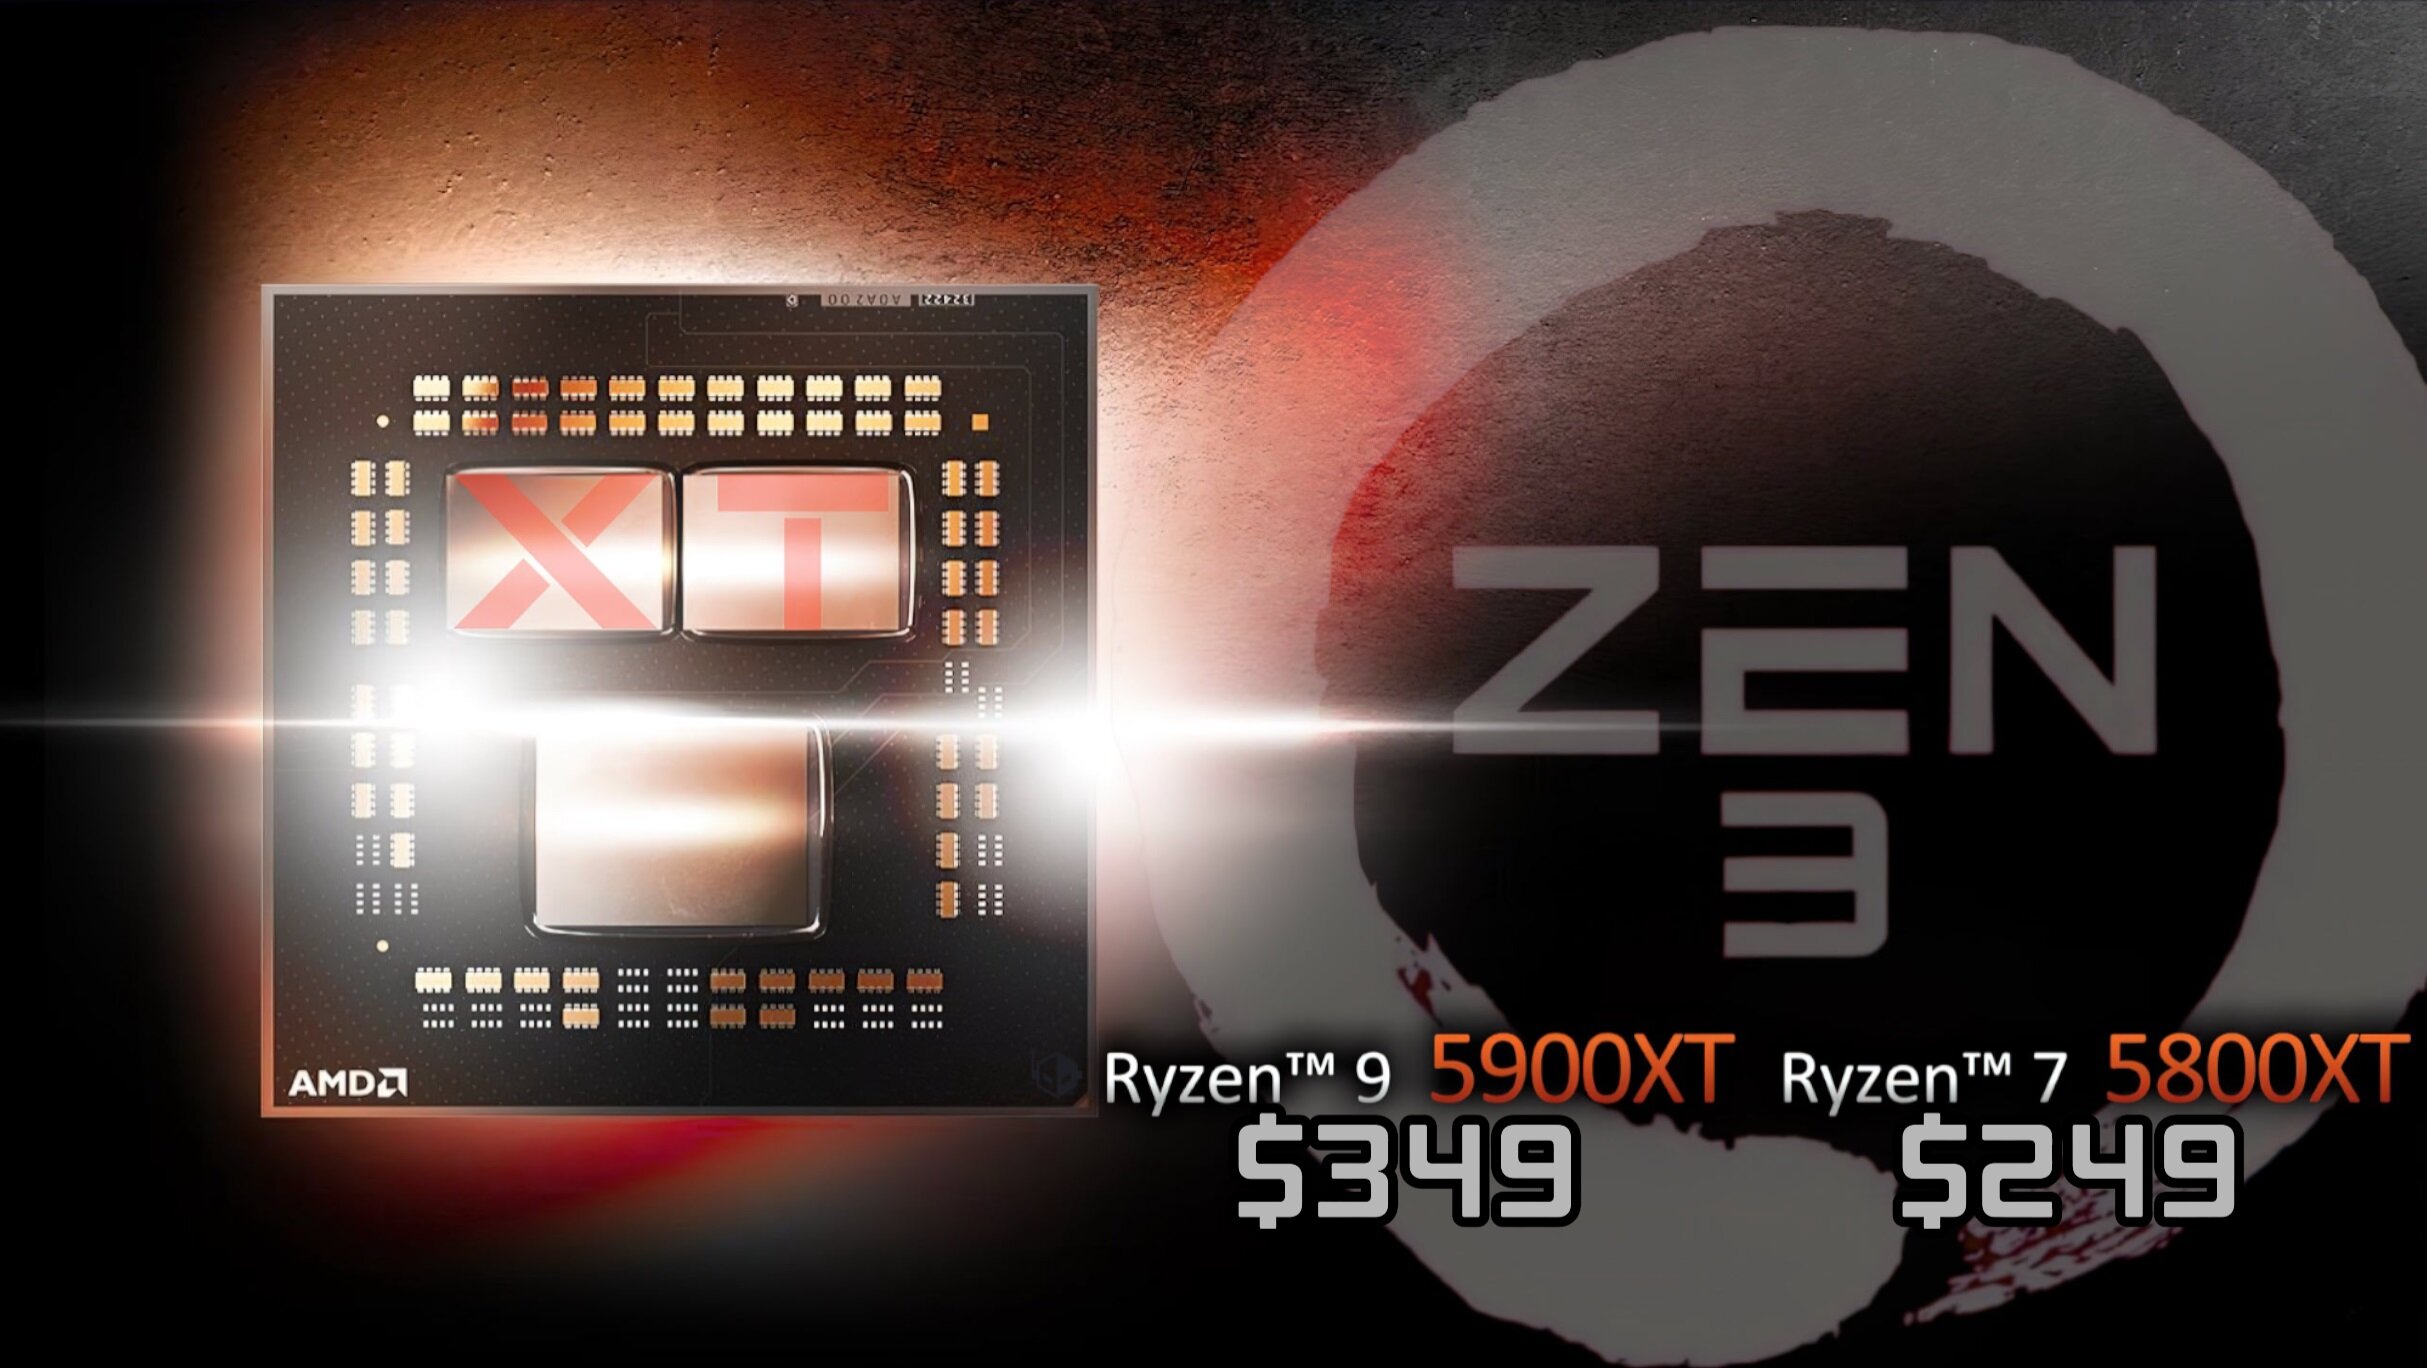 Сокет AM4 на покой не собирается: представлены процессоры AMD Ryzen 9 5900XT и Ryzen 7 5800XT